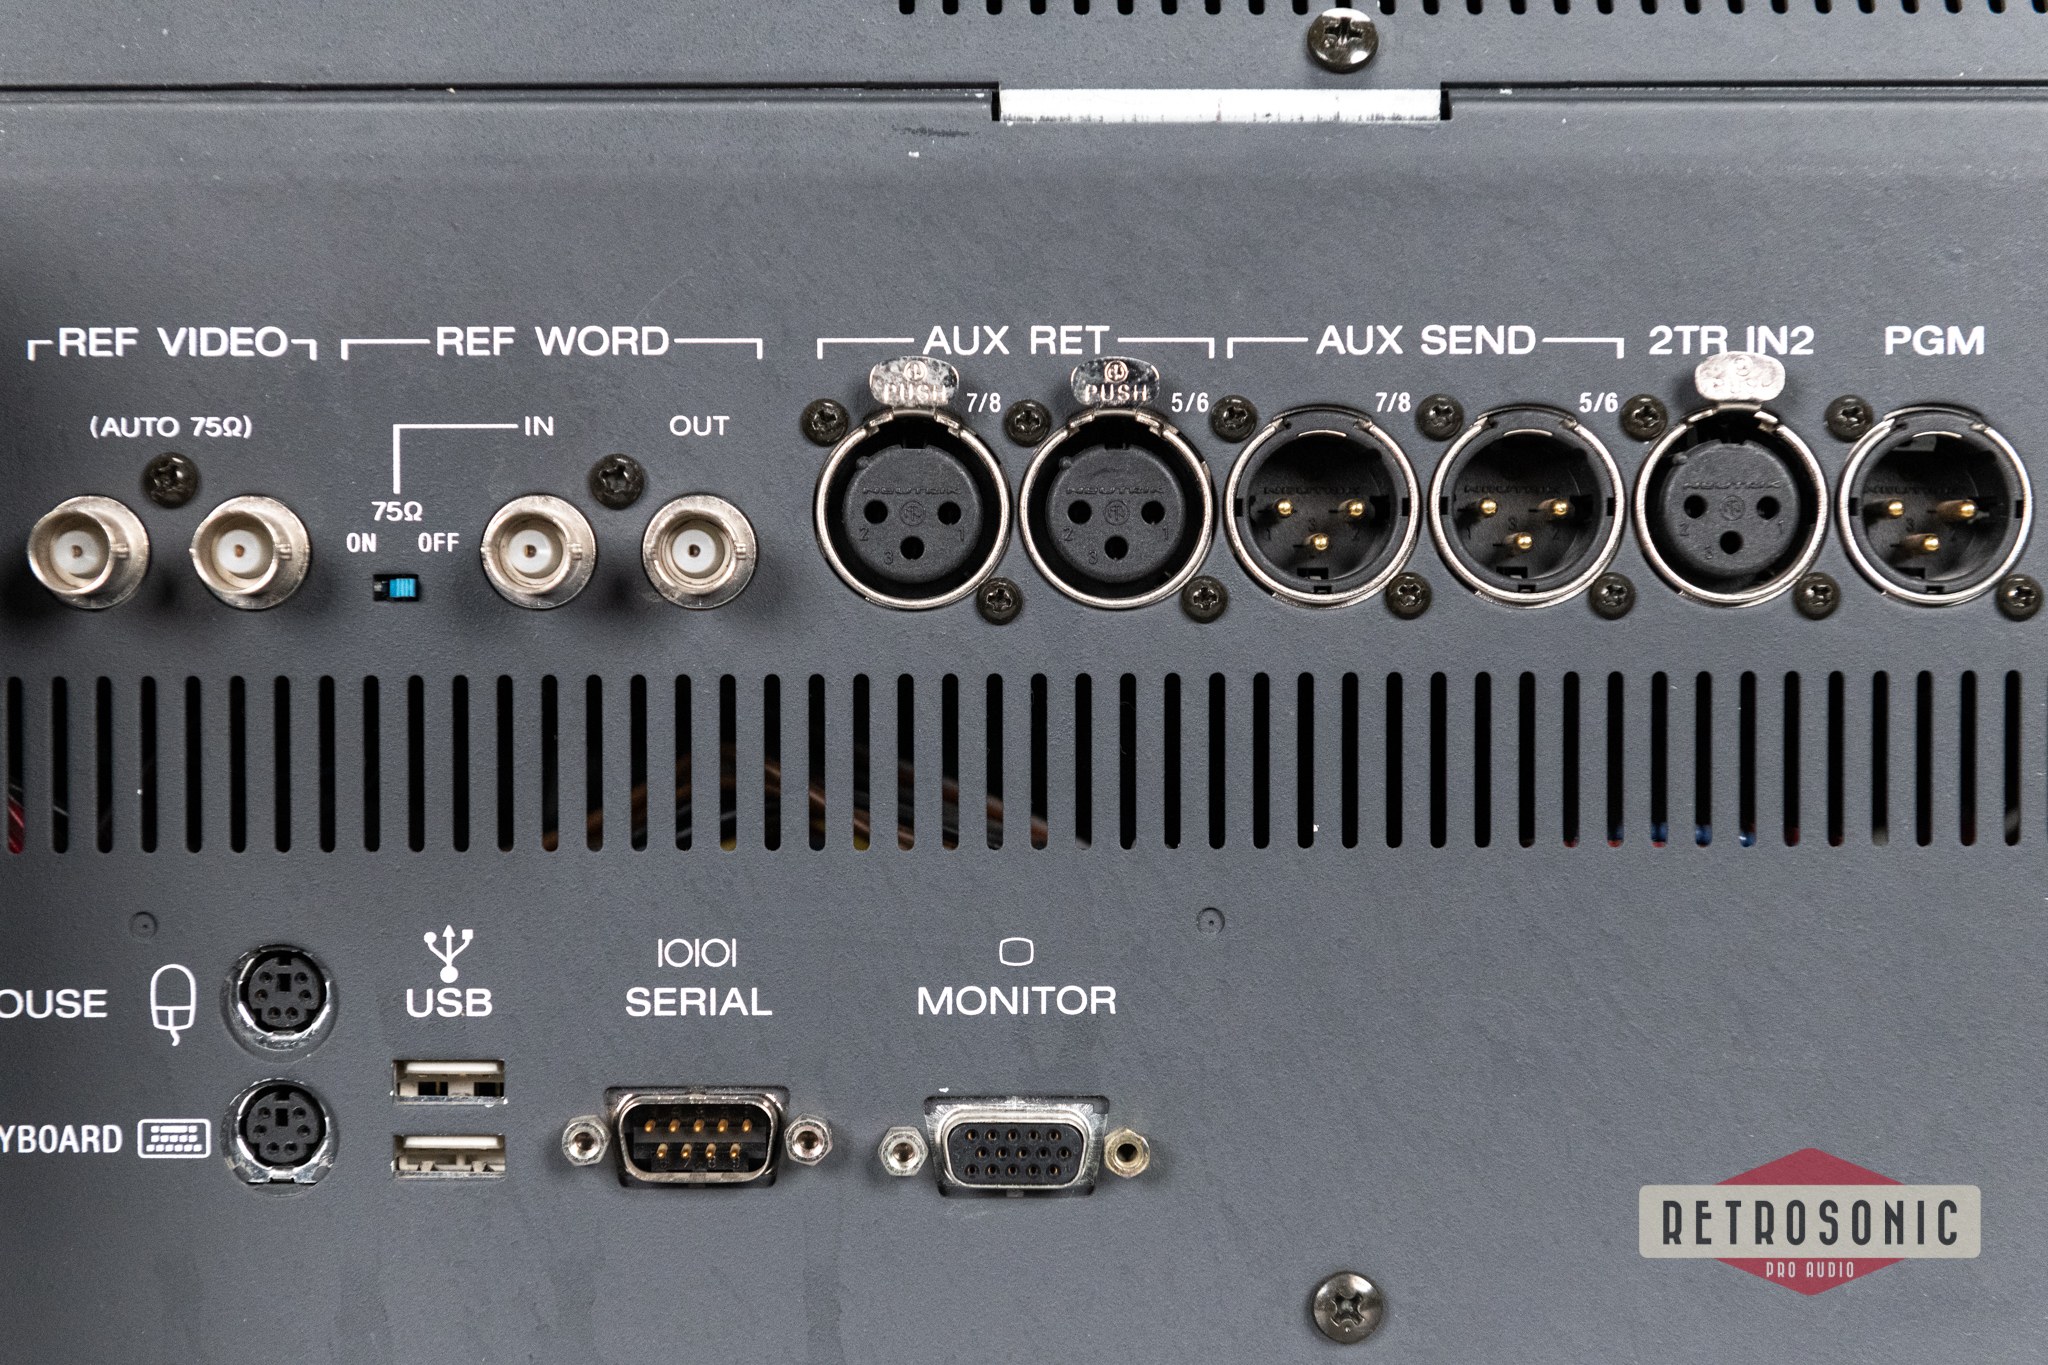 SONY DMX-R100 Digital Mixing Console